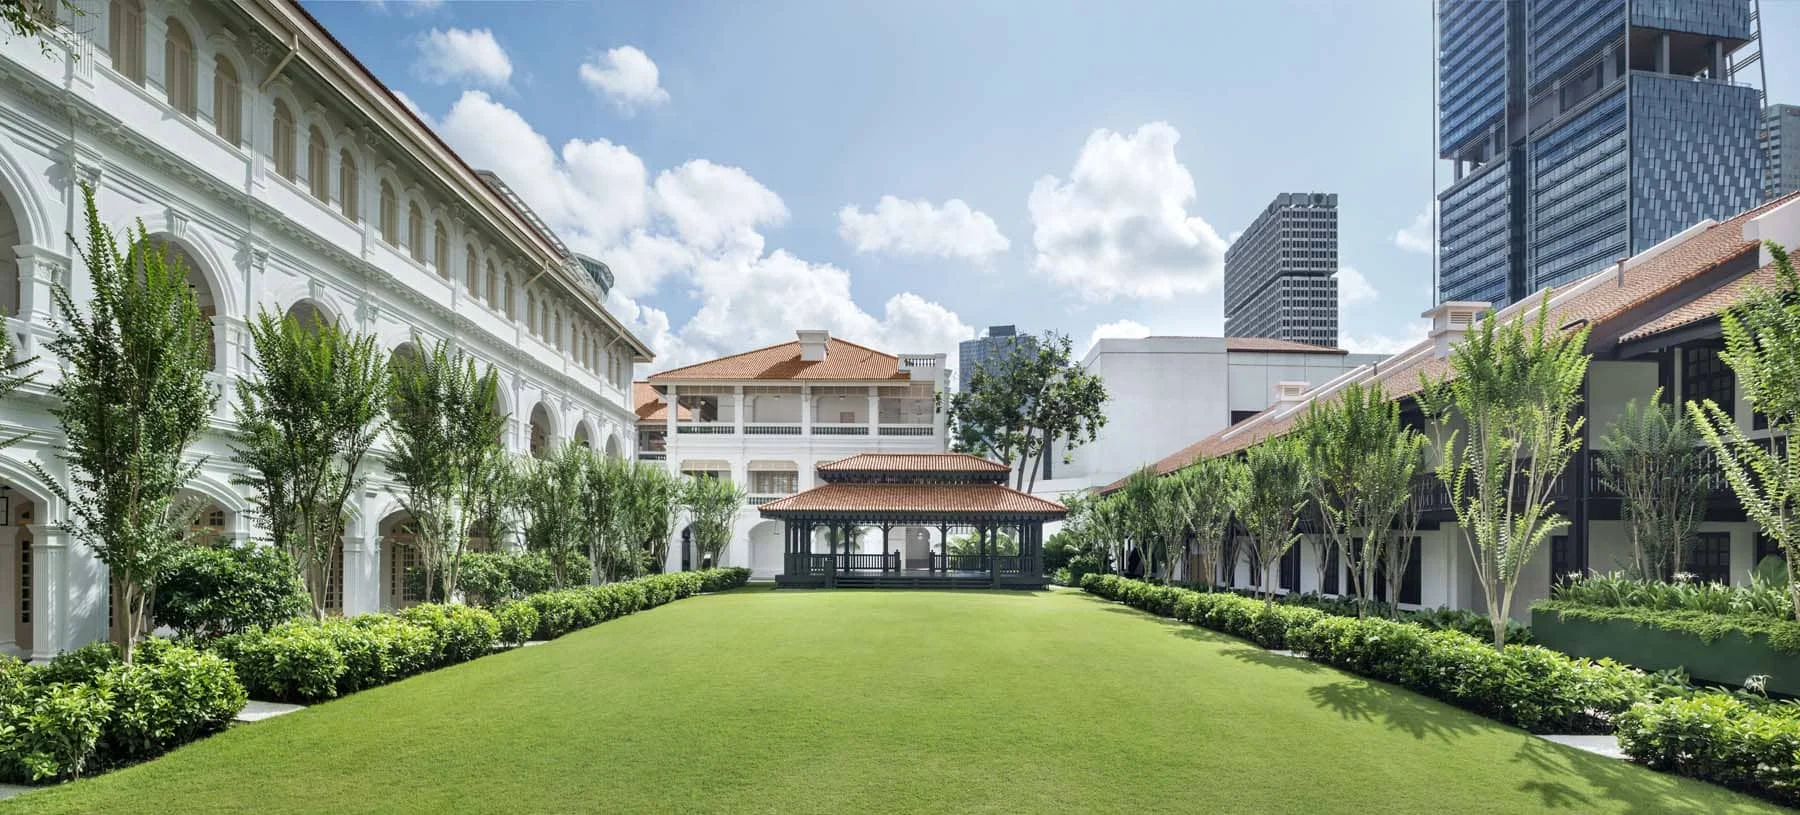 هتل رافلز از جاذبه های سنگاپور